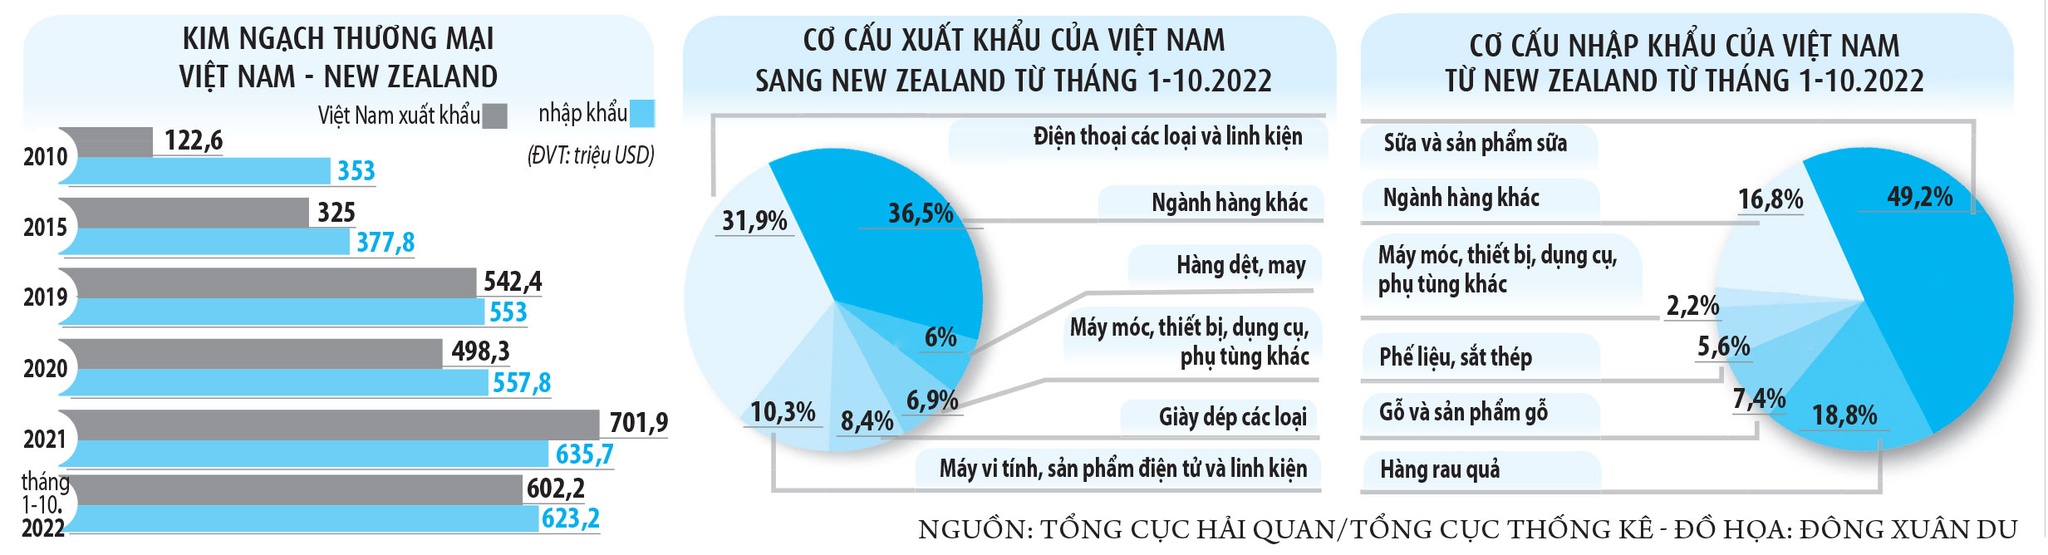 Thúc đẩy quan hệ thương mại Việt Nam - New Zealand - ảnh 2